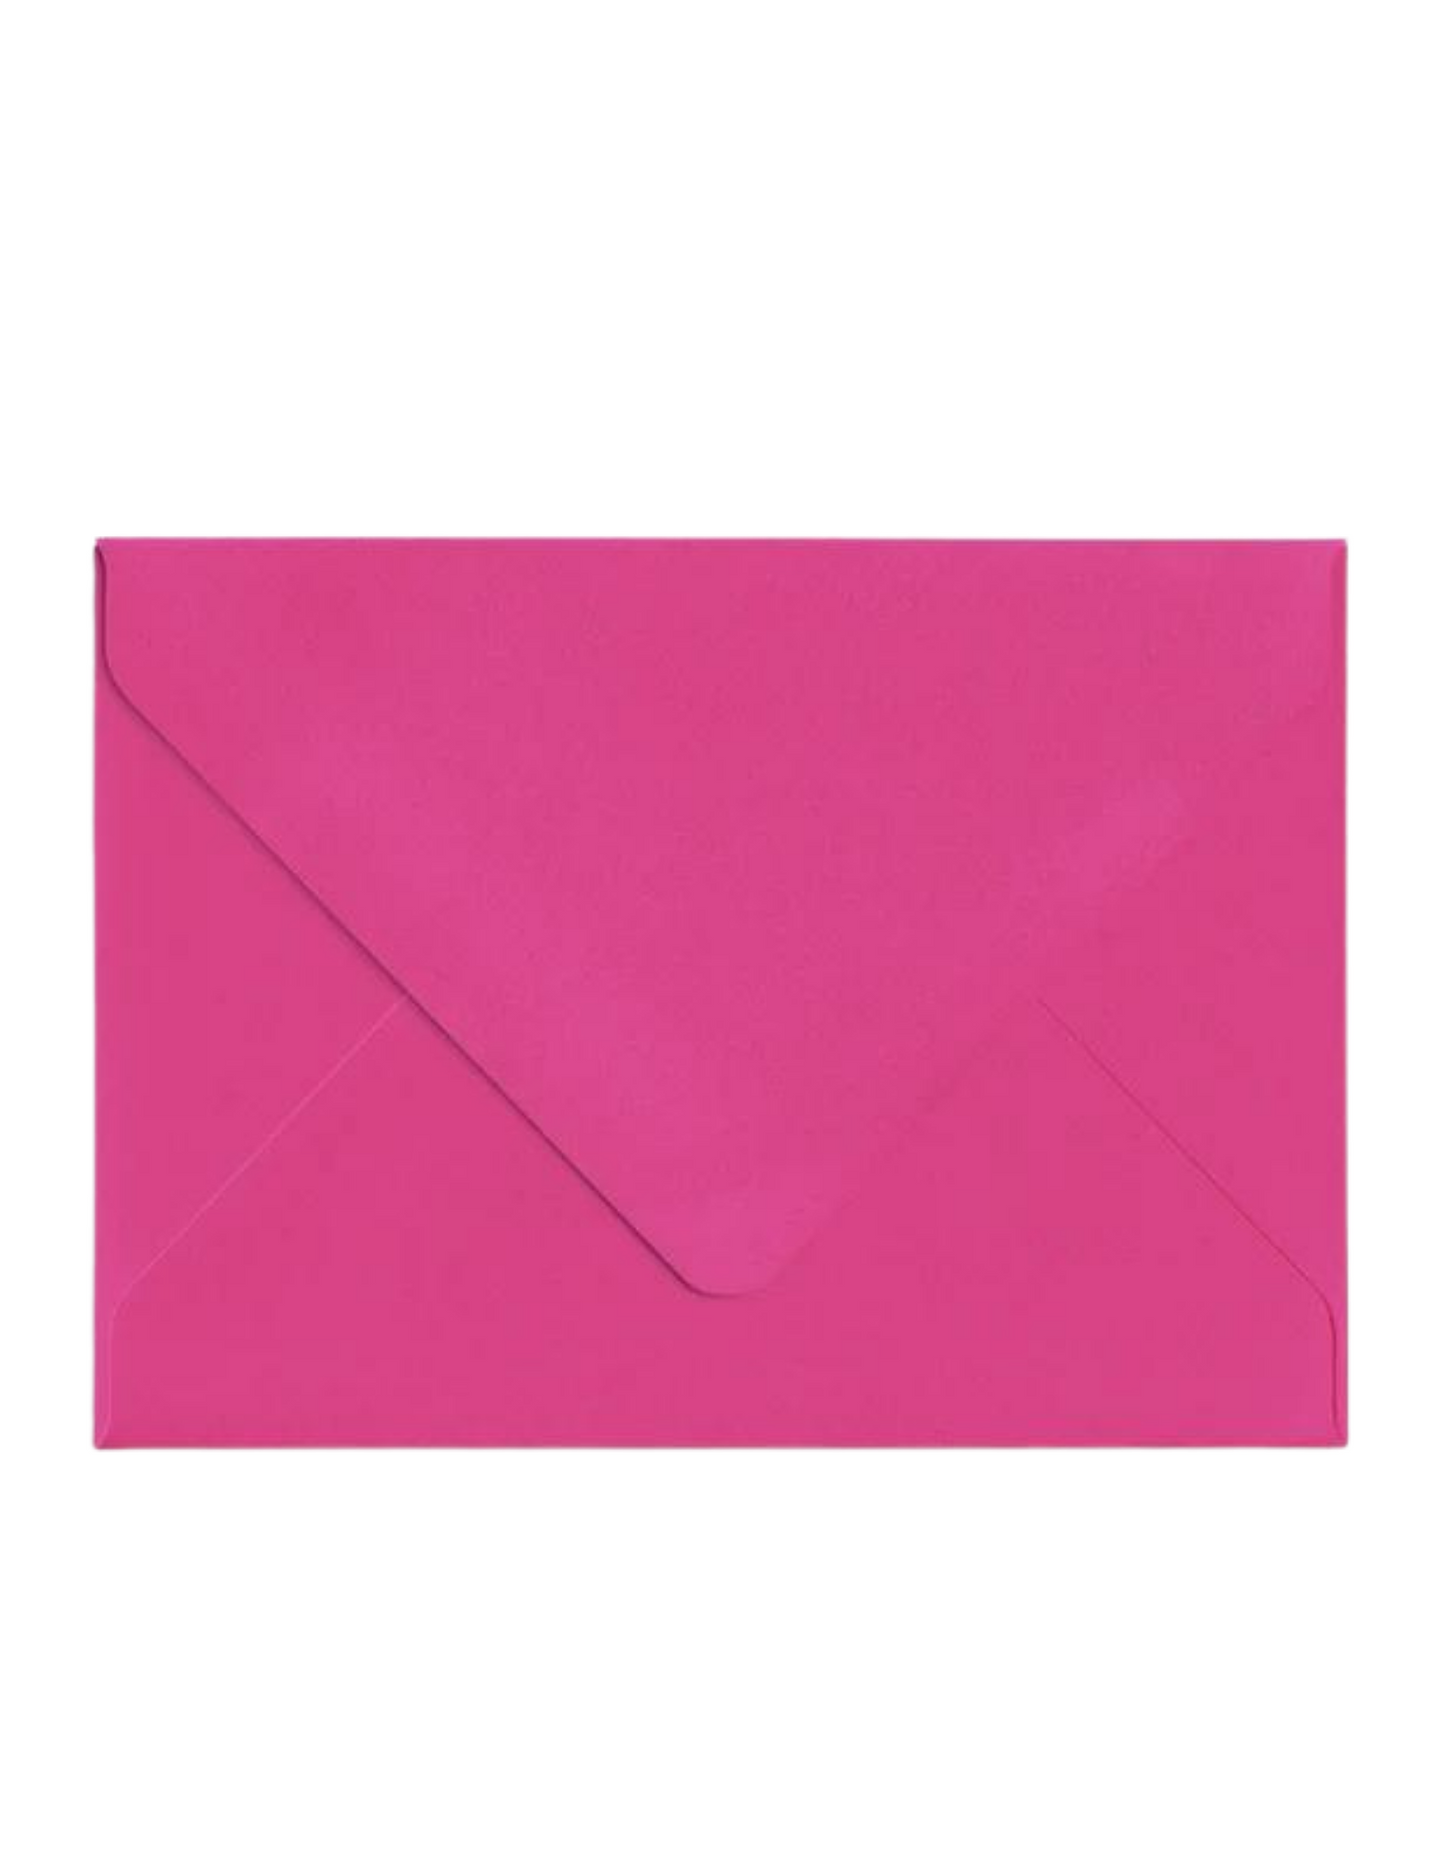 Hot Pink A2 Envelope Set